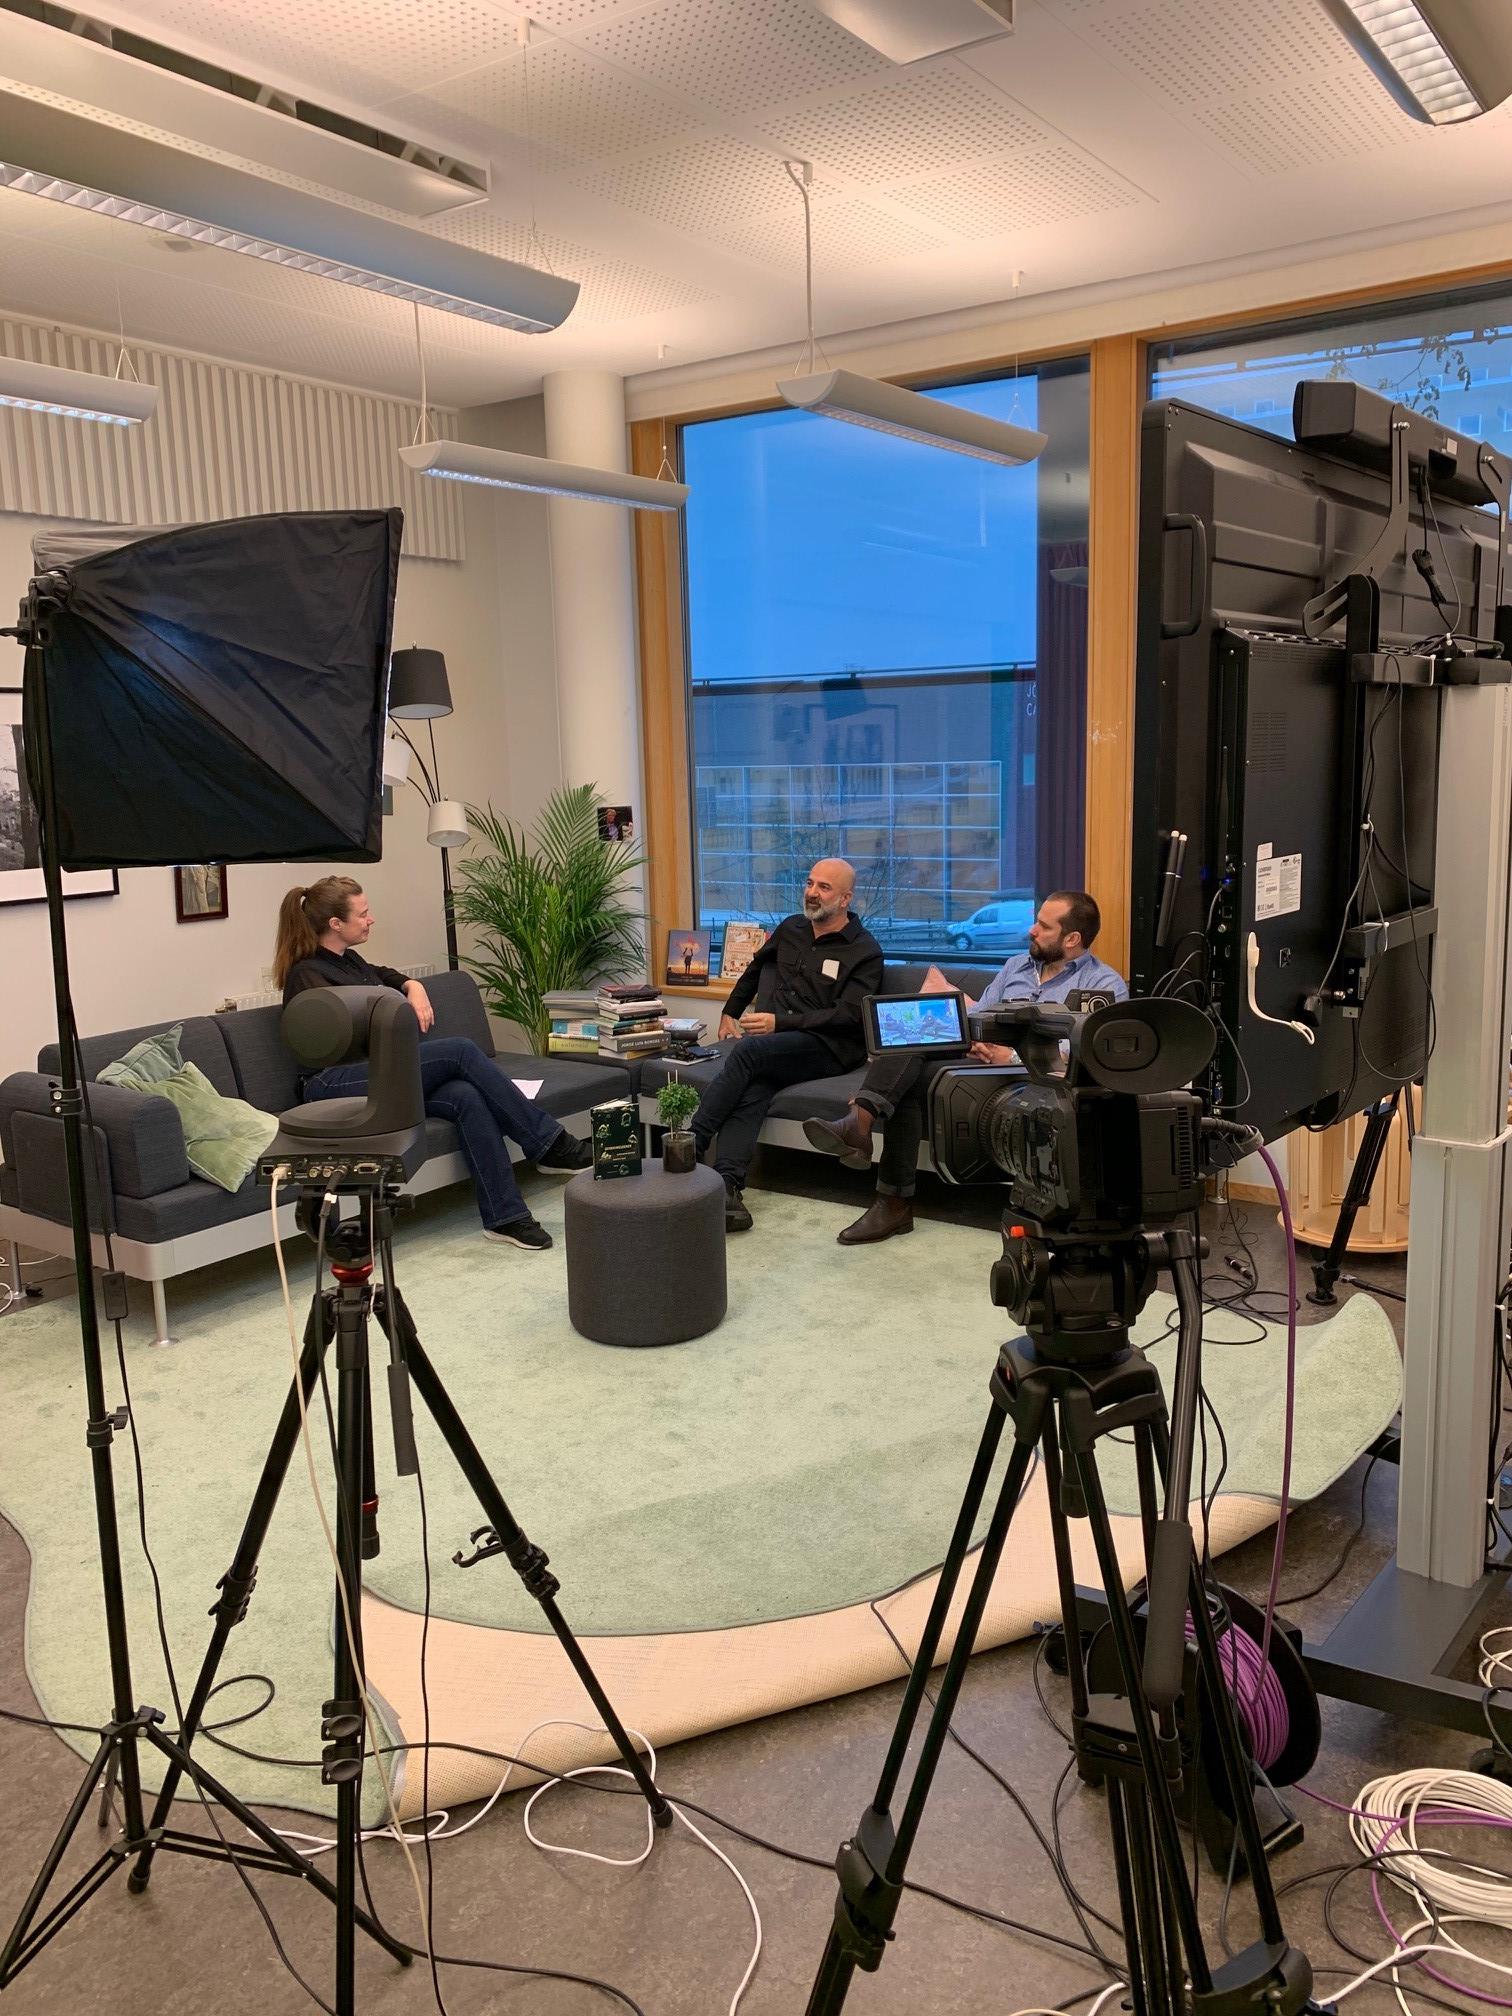 Inspelning av Skrivarhubben 2020, kameror och inspelningsutrustning, soffor och tre personer som sitter och pratar. 